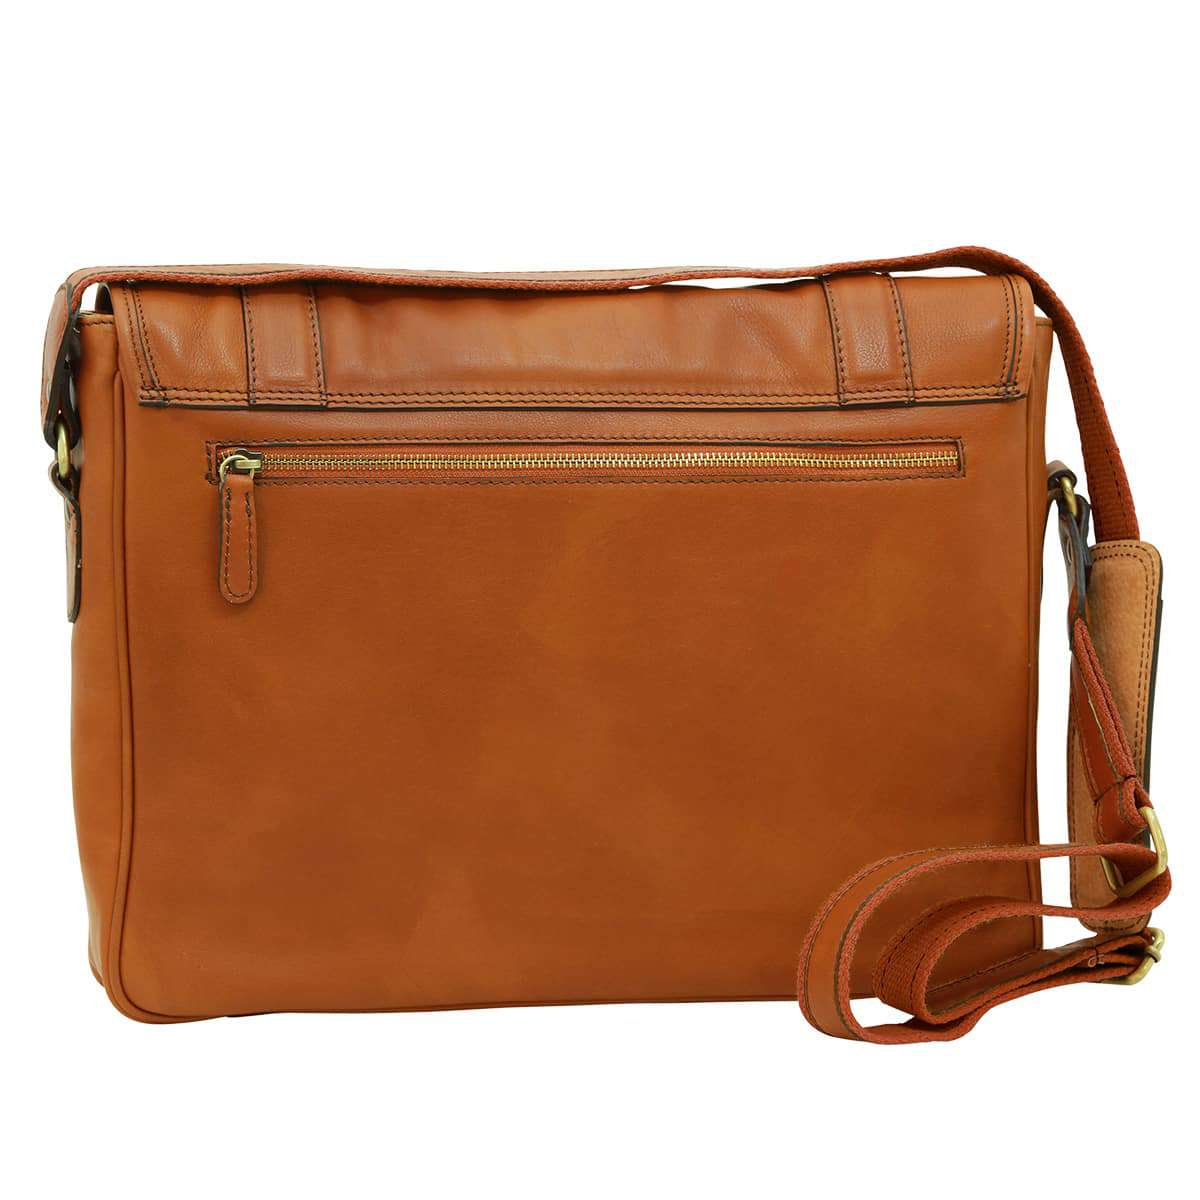 Soft Calfskin Leather Messenger Bag - Gold | 030491CO UK | Old Angler Firenze